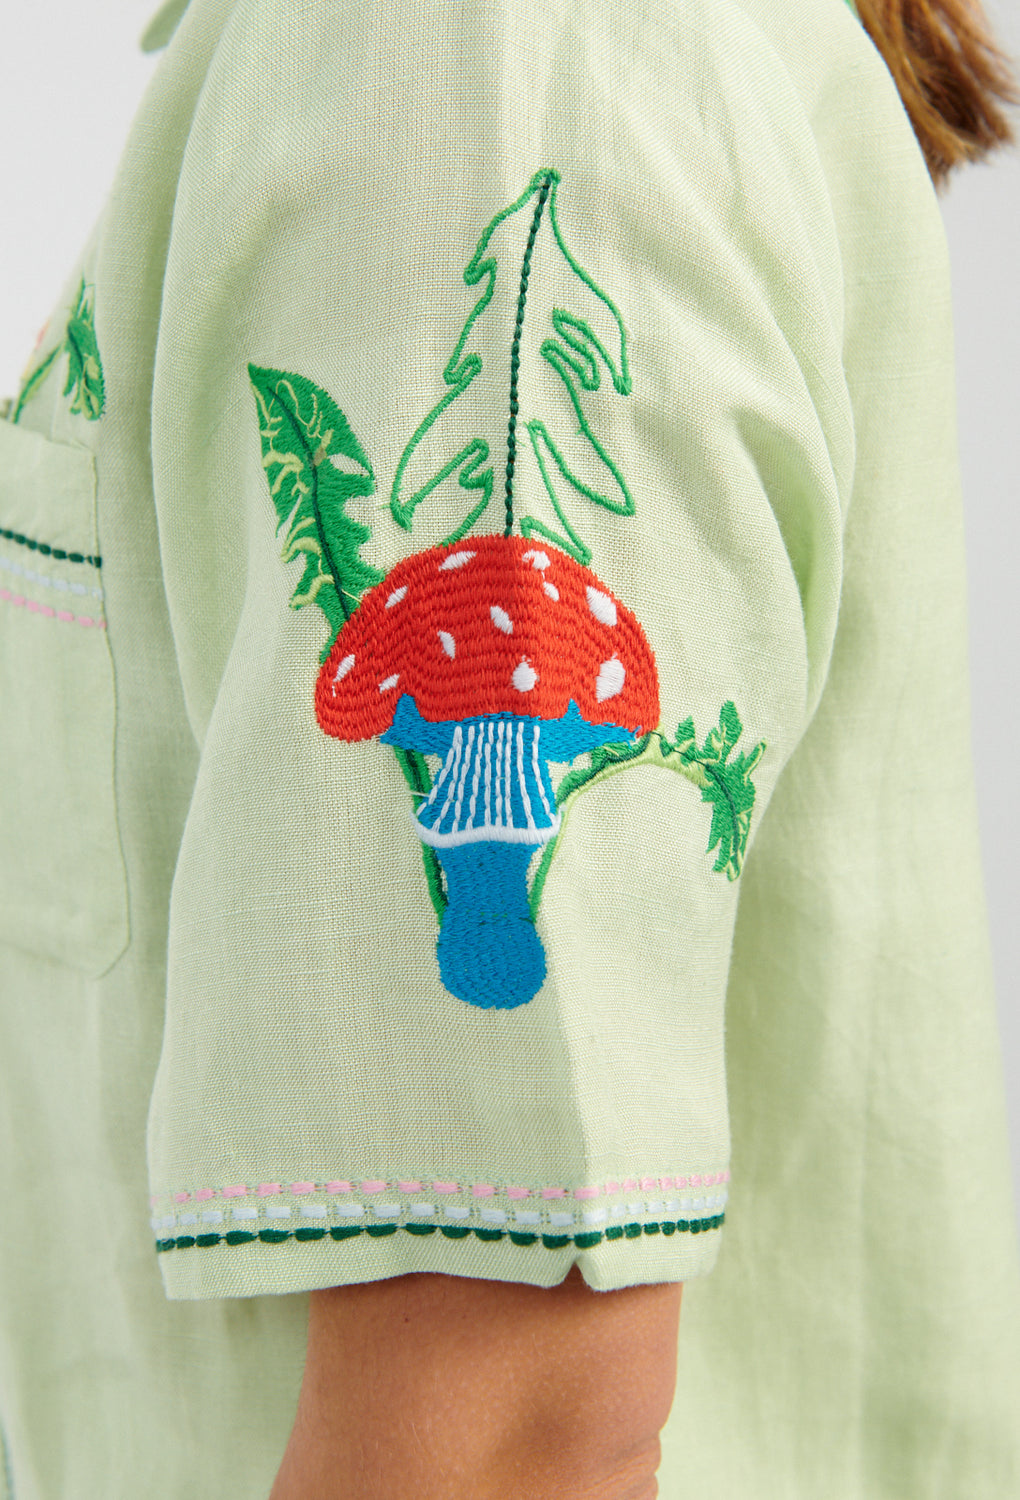 Helmstedt Aleta Shirt mint green-Helmstedt embroidered shirt green-Helmstedt mushroom shirt-Idun-St. Paul